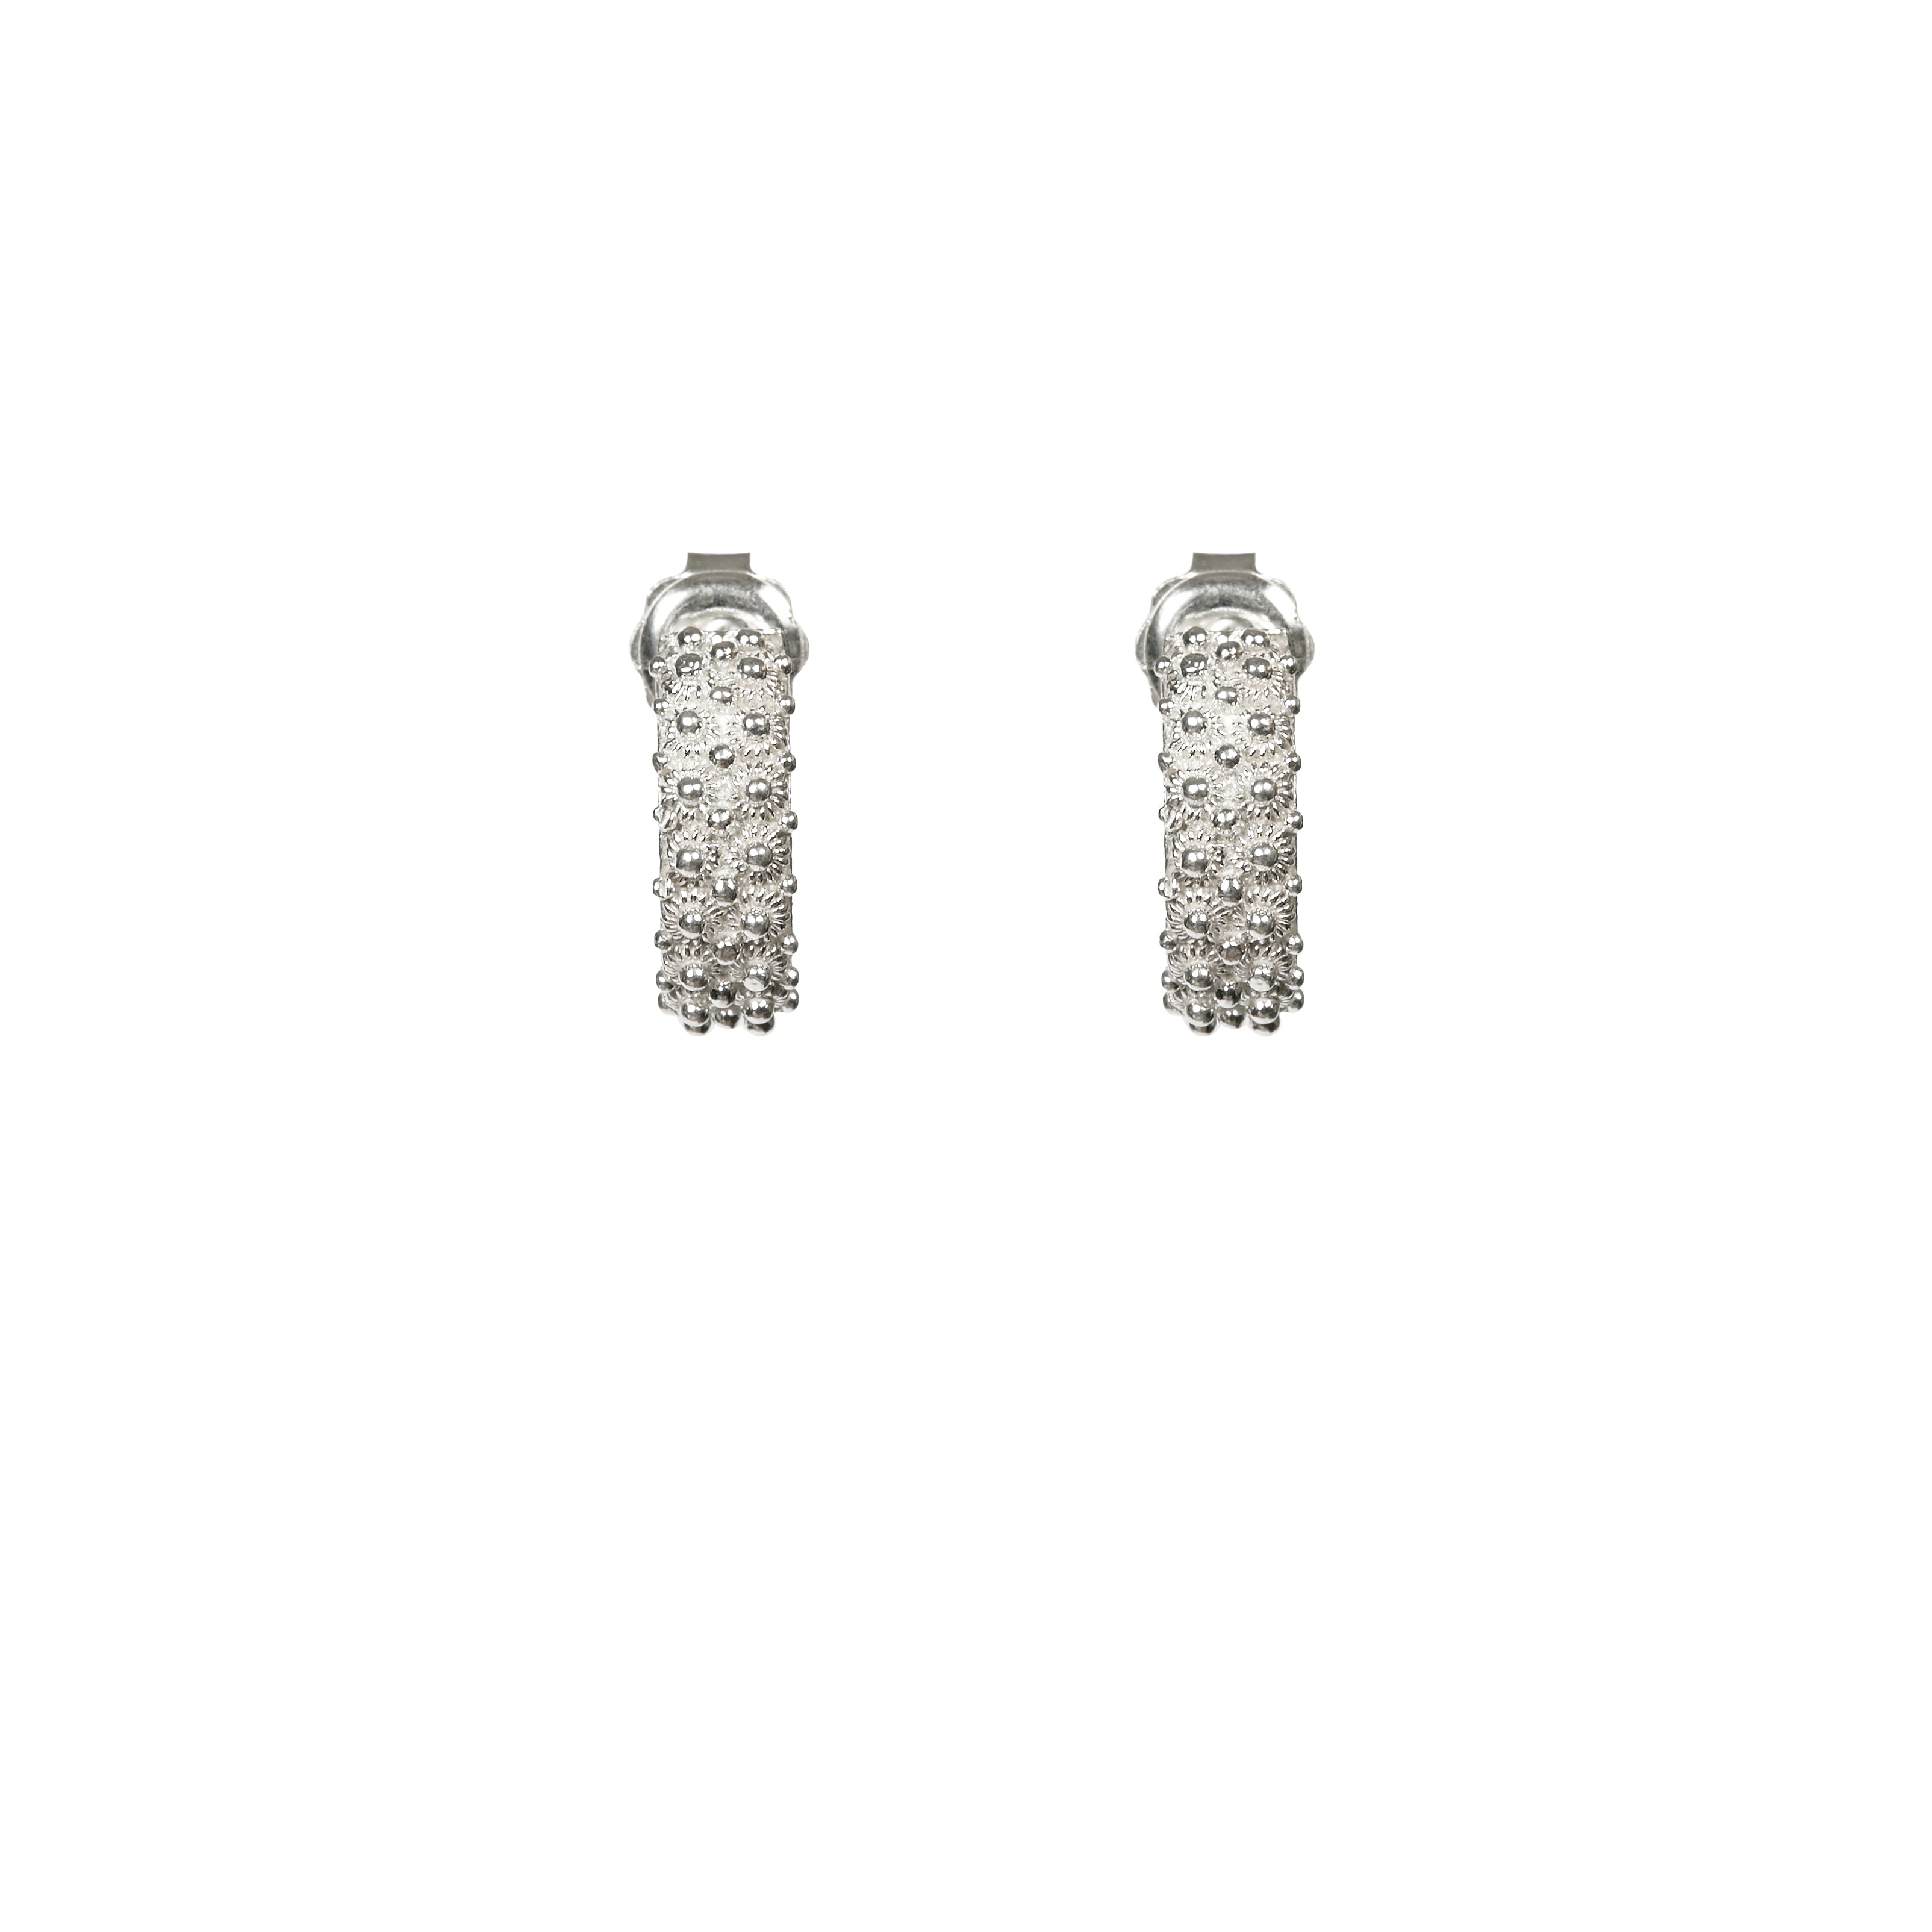 BABA Earrings - Watermark - Silver 925/1000 | BABA MEA AYAYA